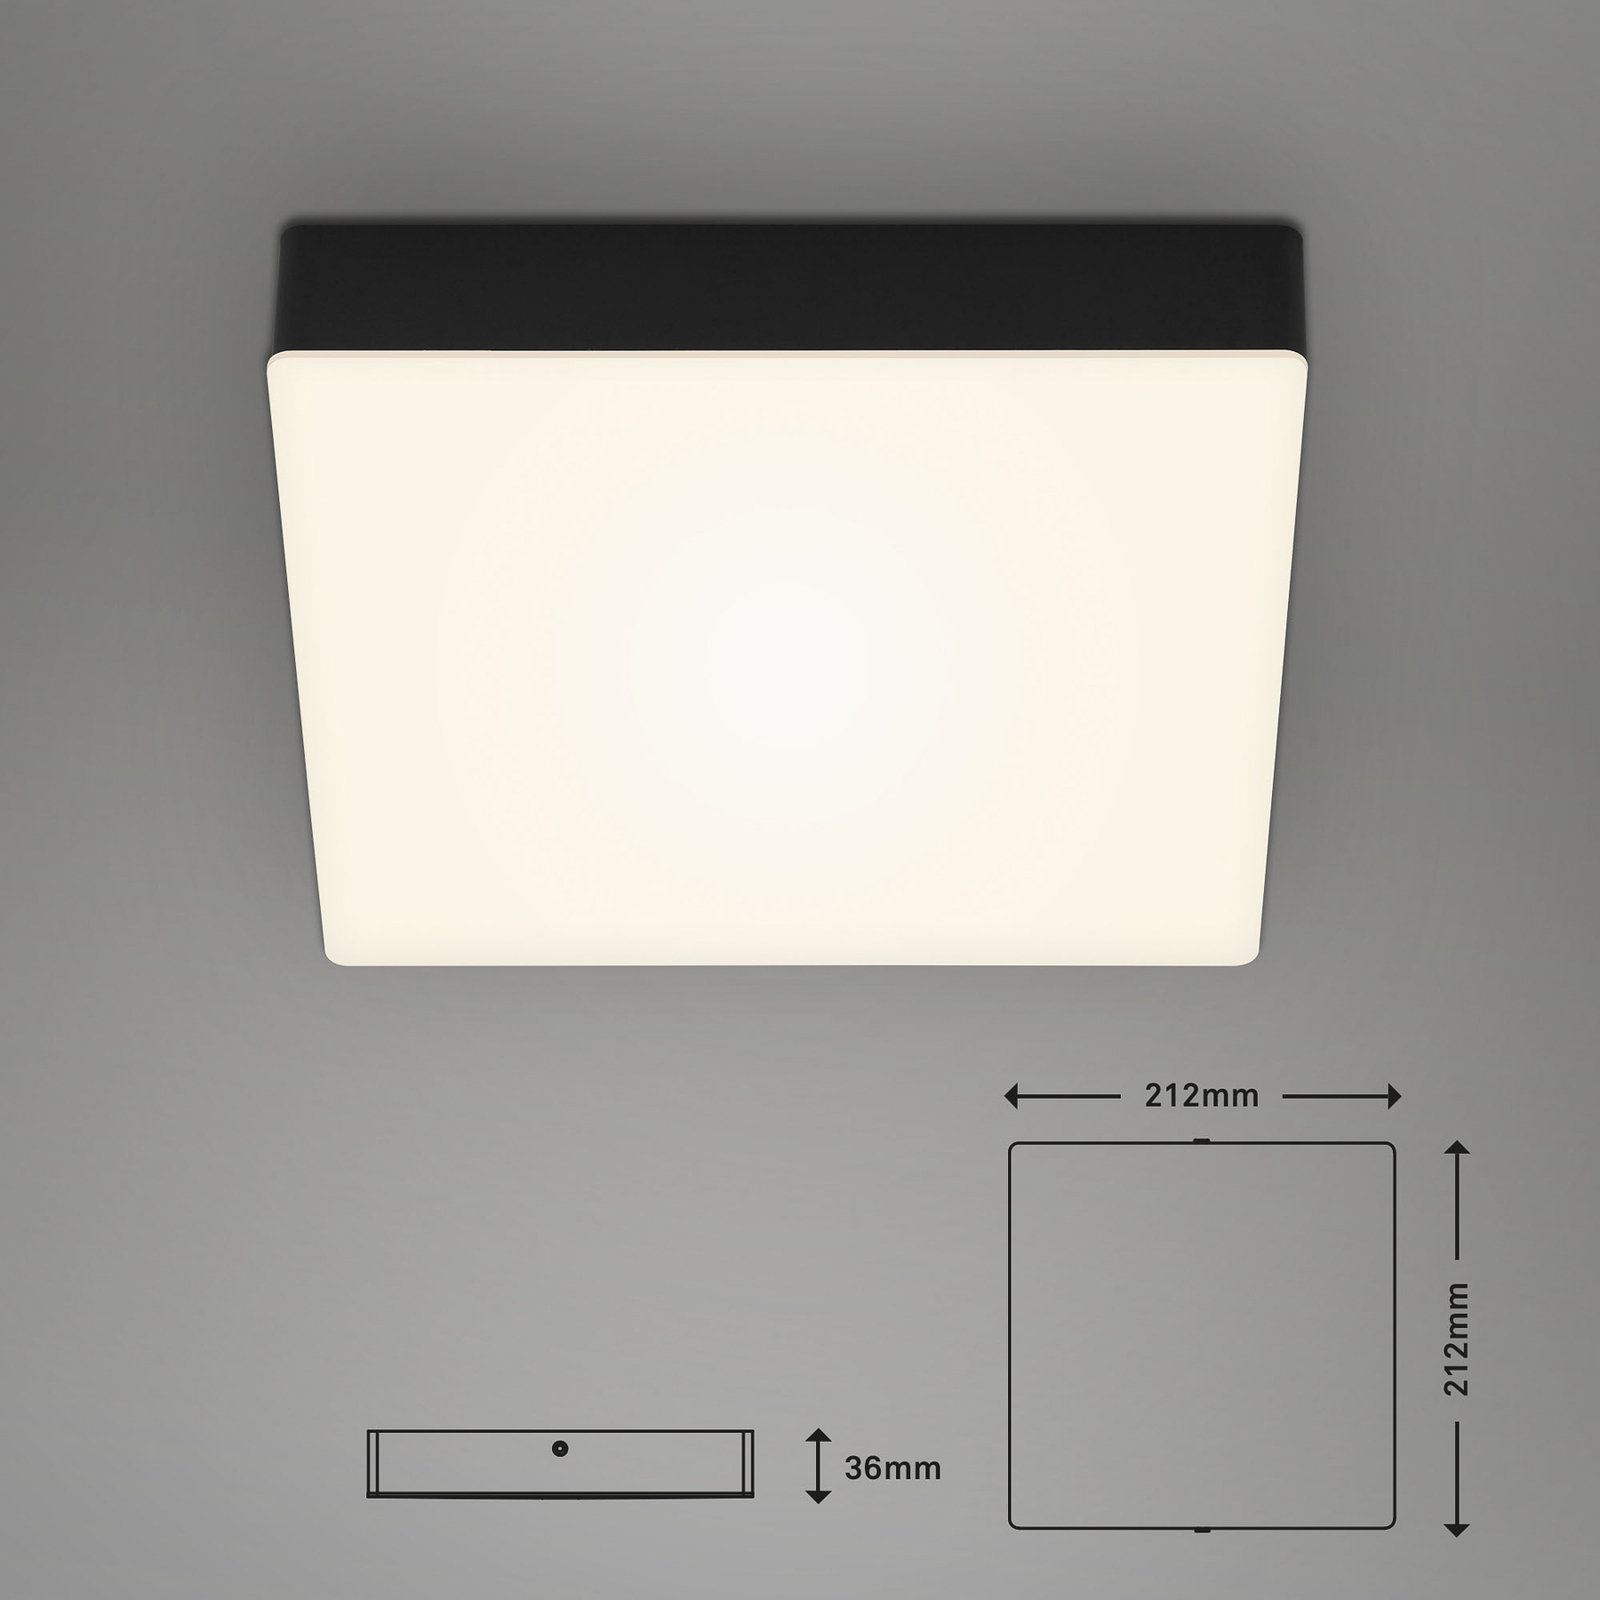 Stropní svítidlo LED Flame, 21,2 x 21,2 cm, černé